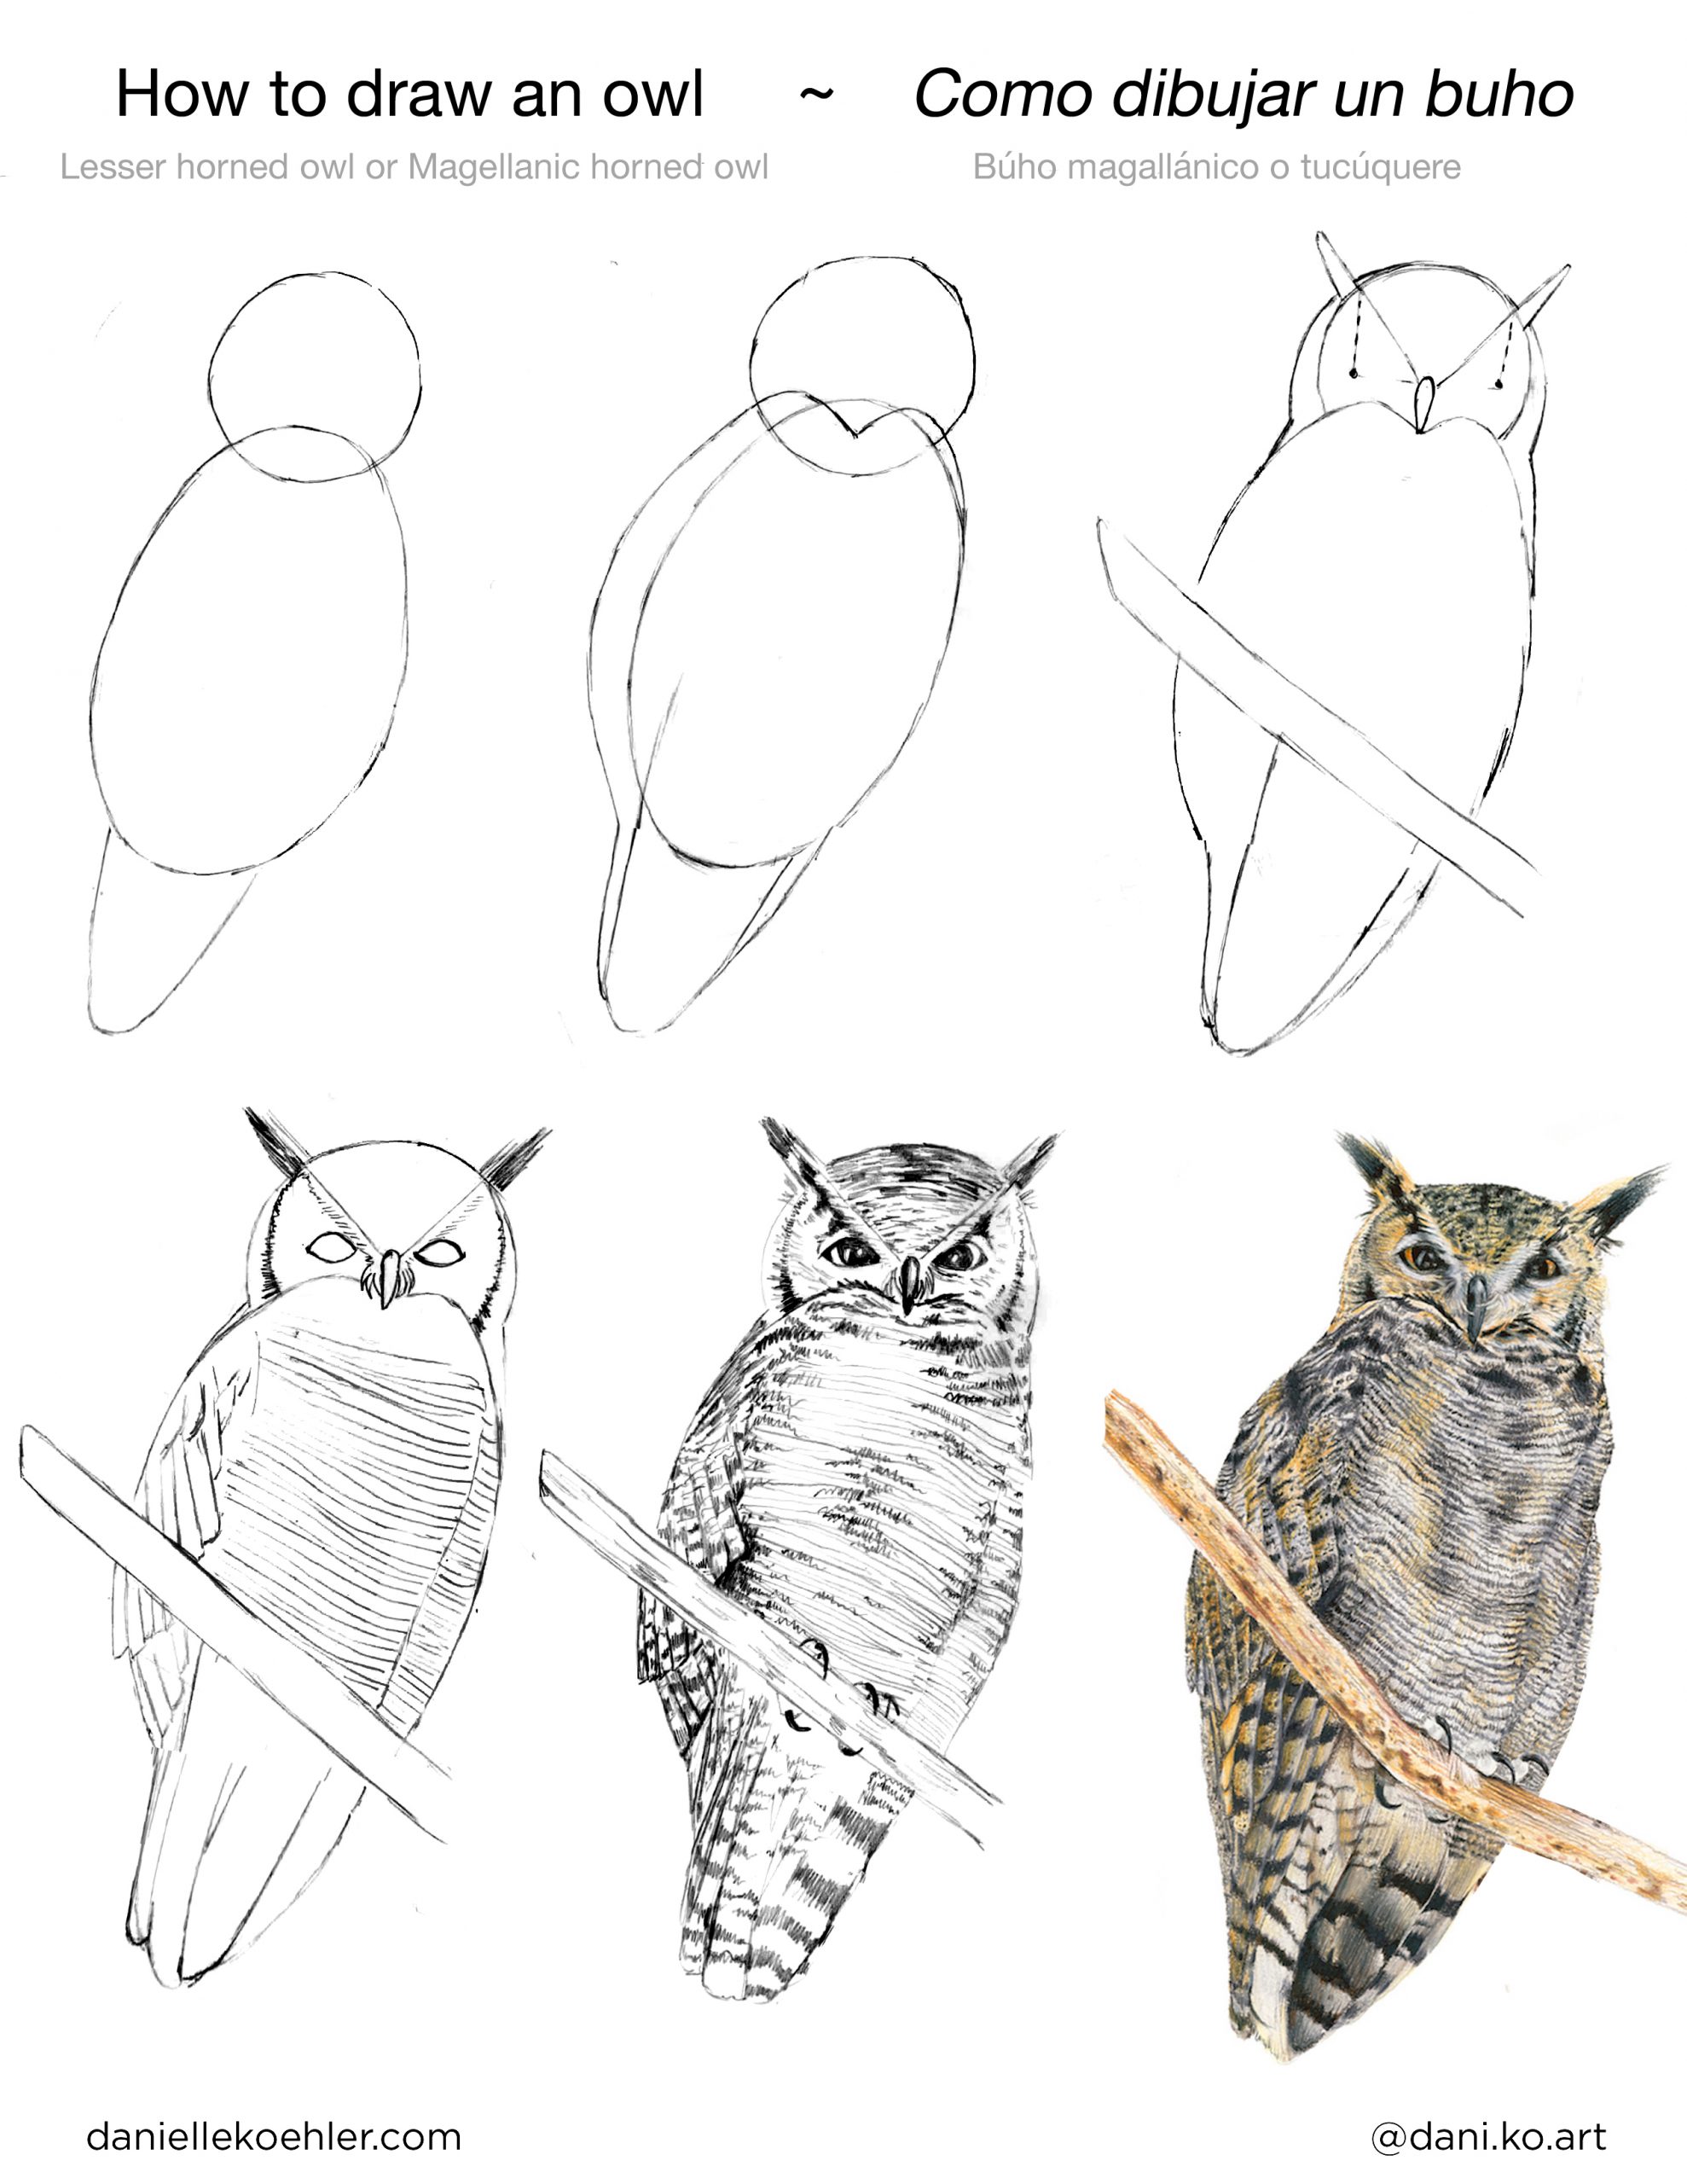 How to draw an owl / Como dibujar un buho